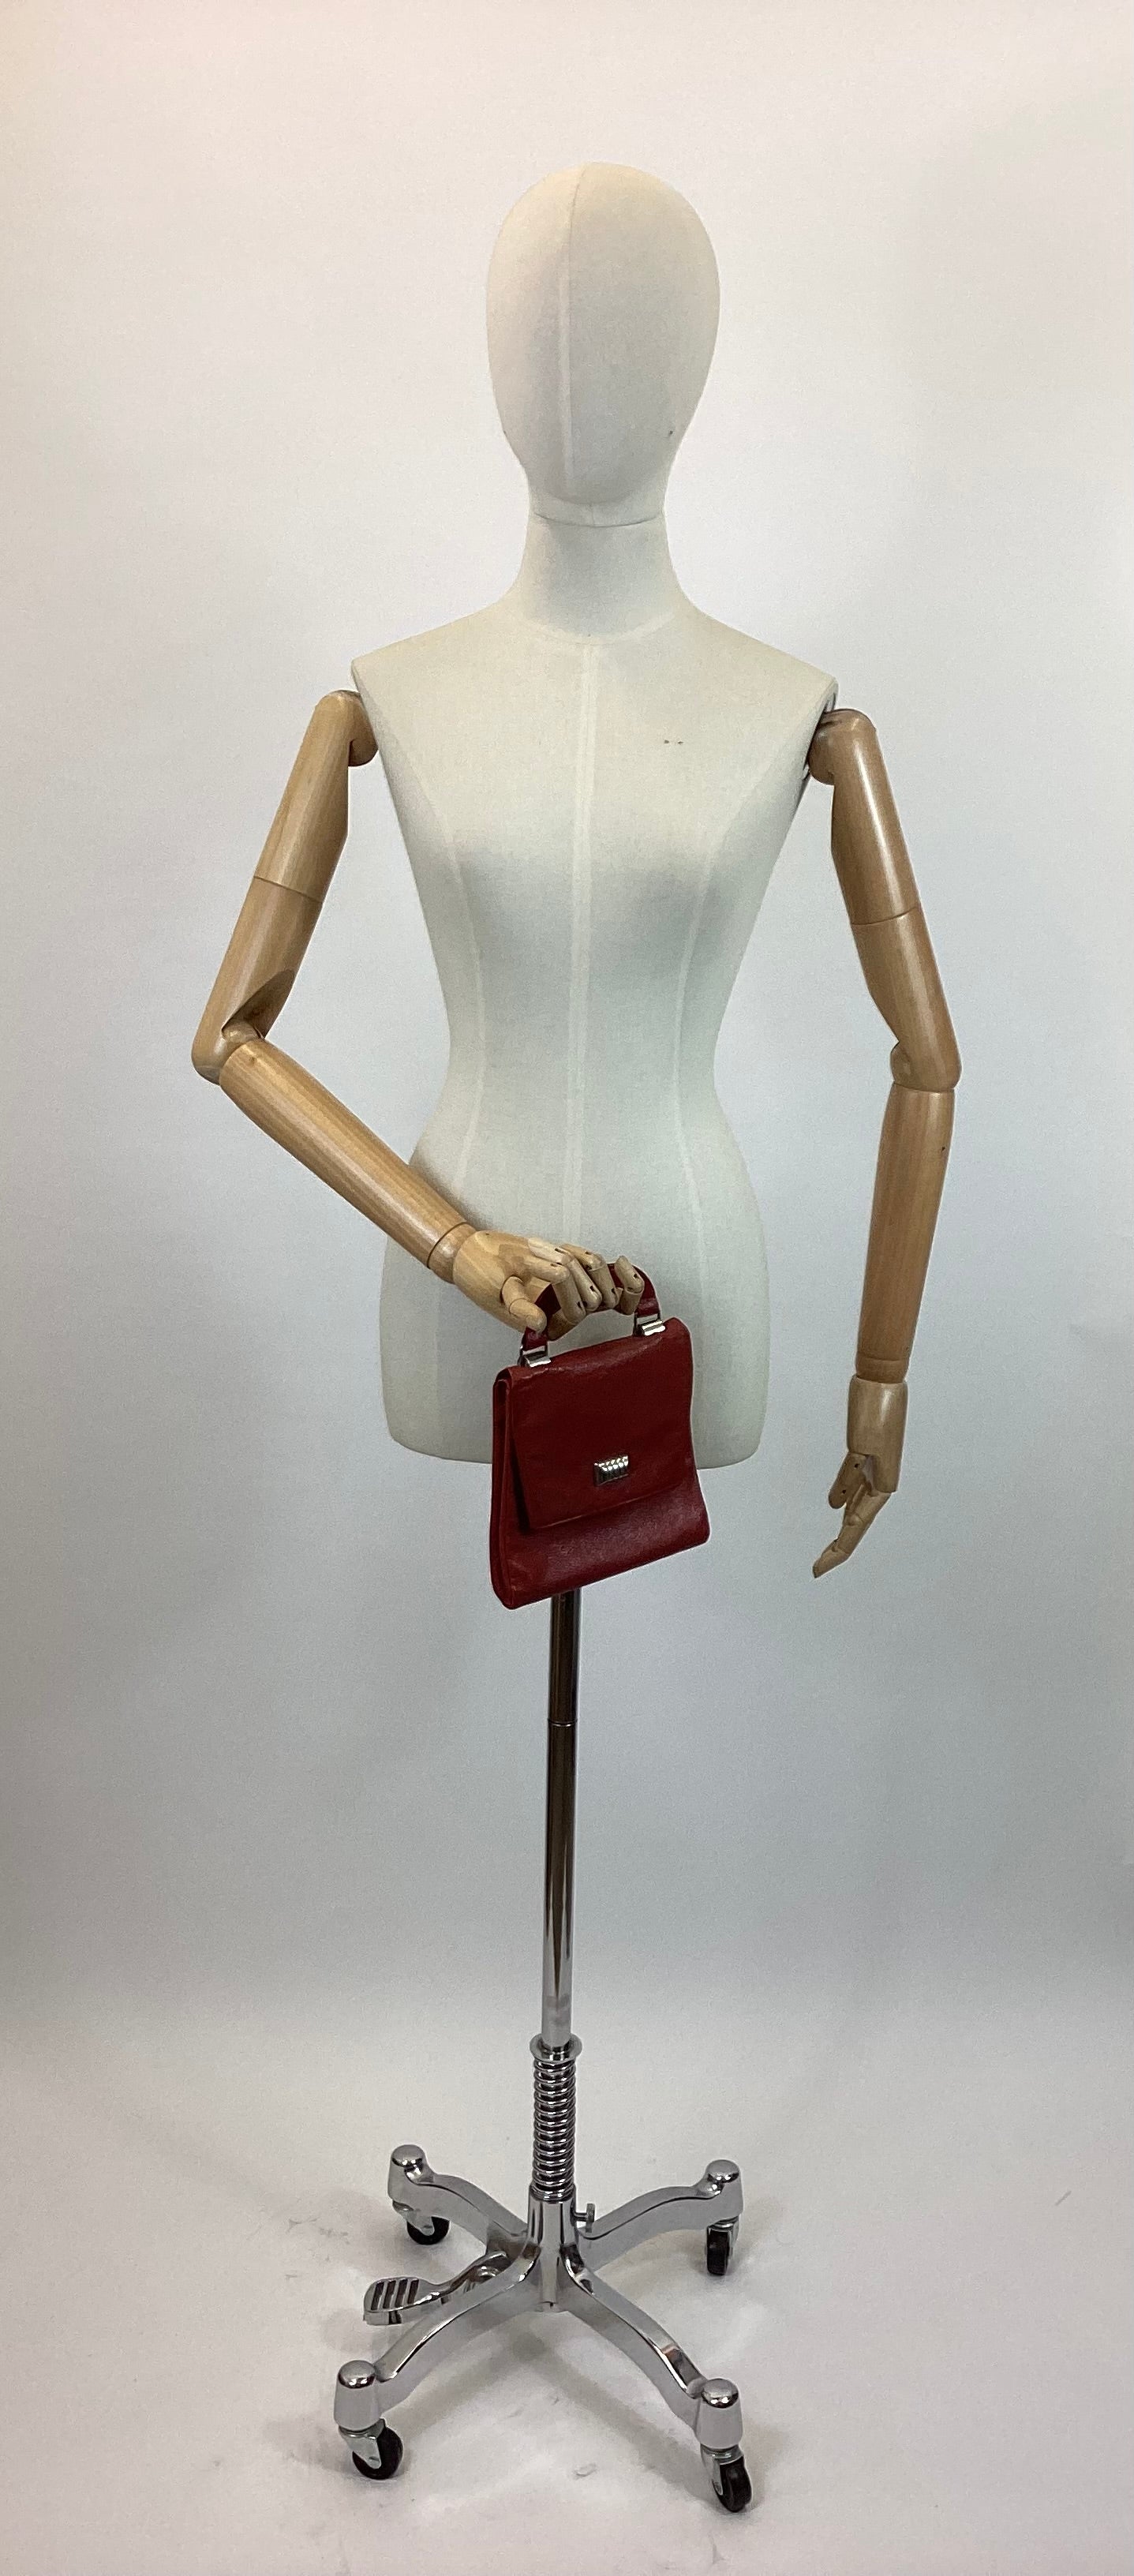 Original 1930’s dainty Handbag - Striking Red colour